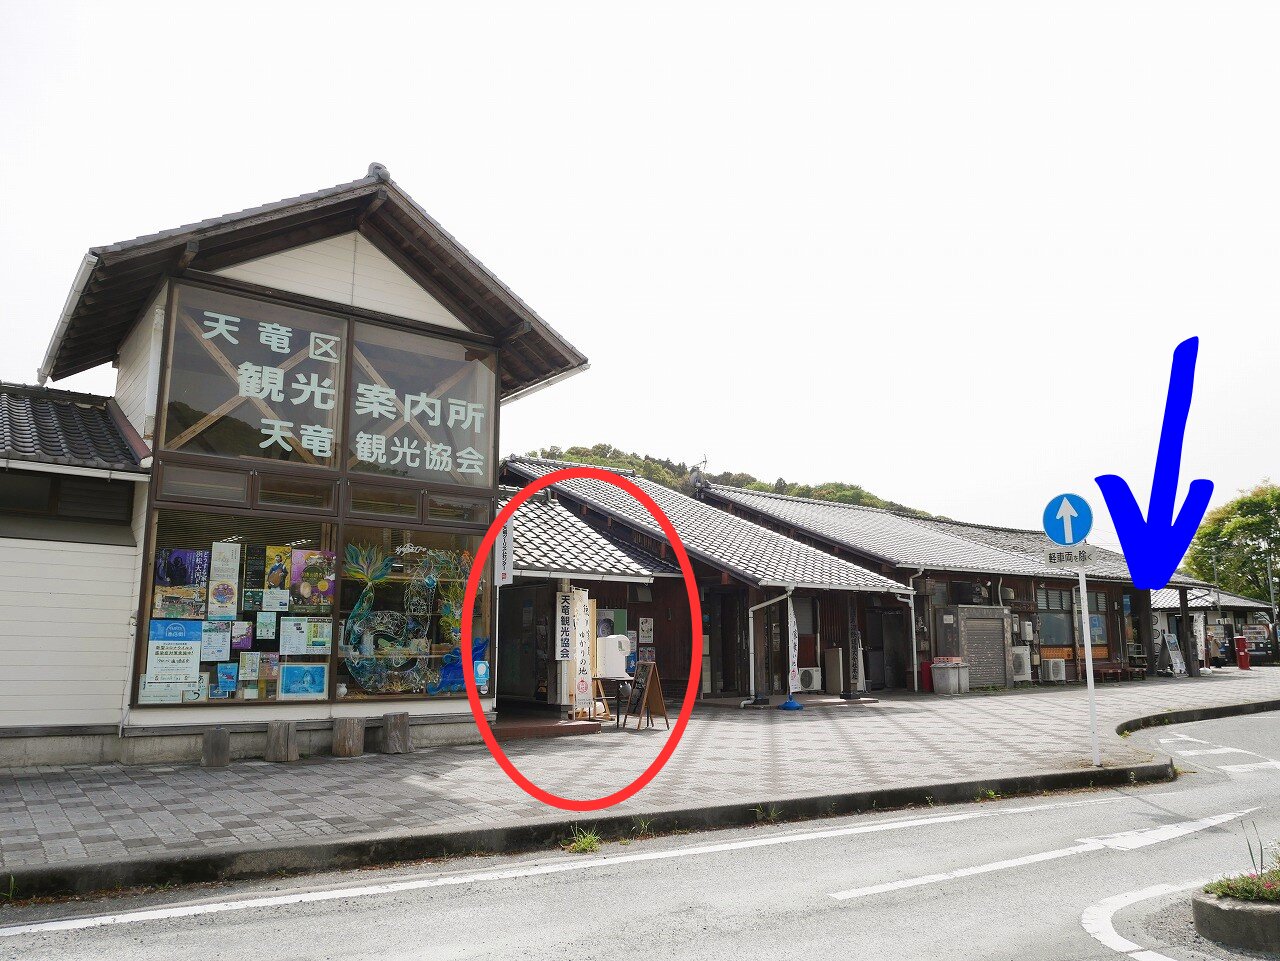 天竜二俣駅舎の出入り口は画面右の青い矢印付近